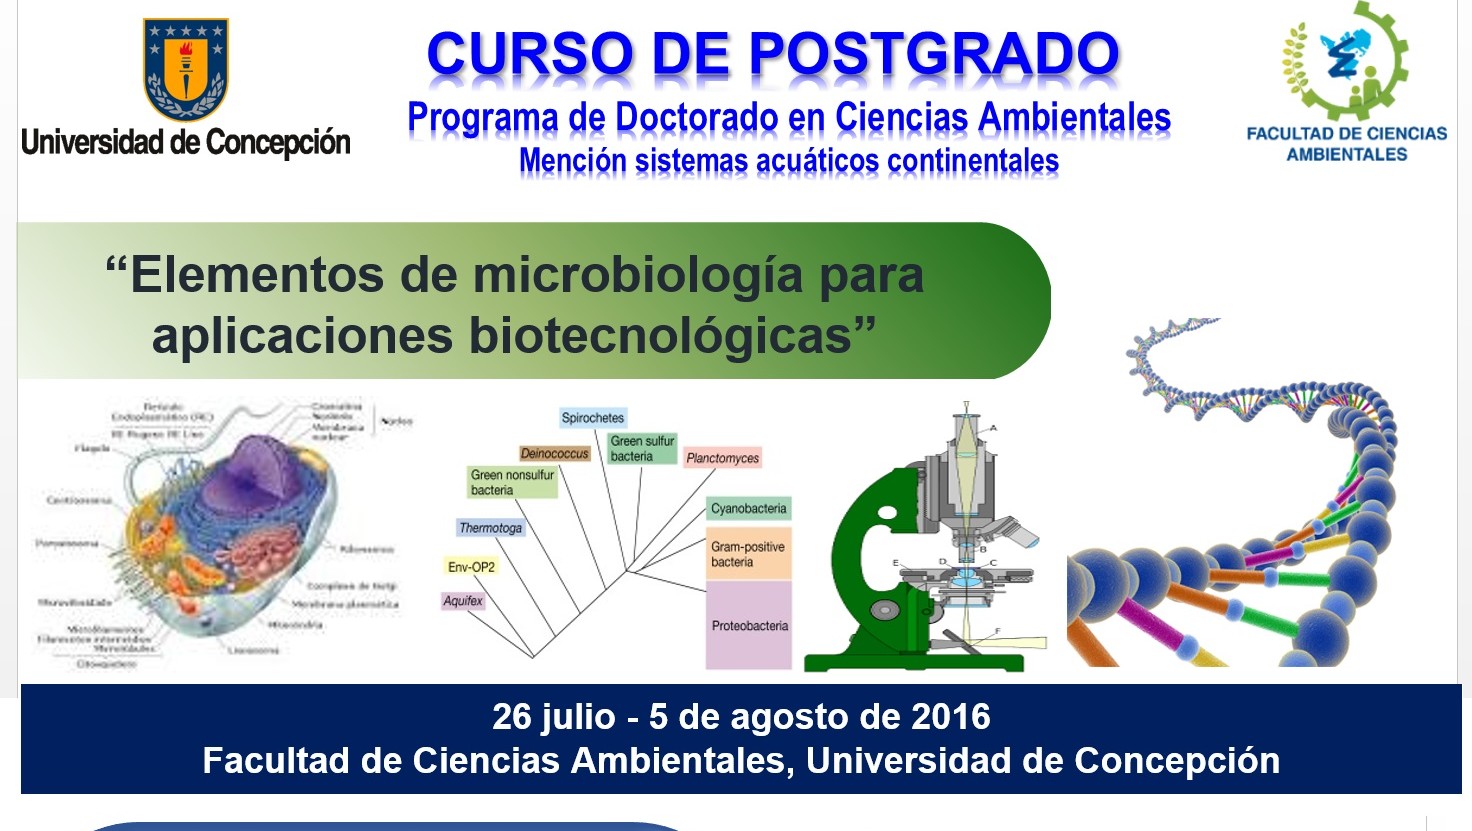 ELEMENTOS DE MICROBIOLOGÍA PARA APLICACIONES BIOTECNOLÓGICAS